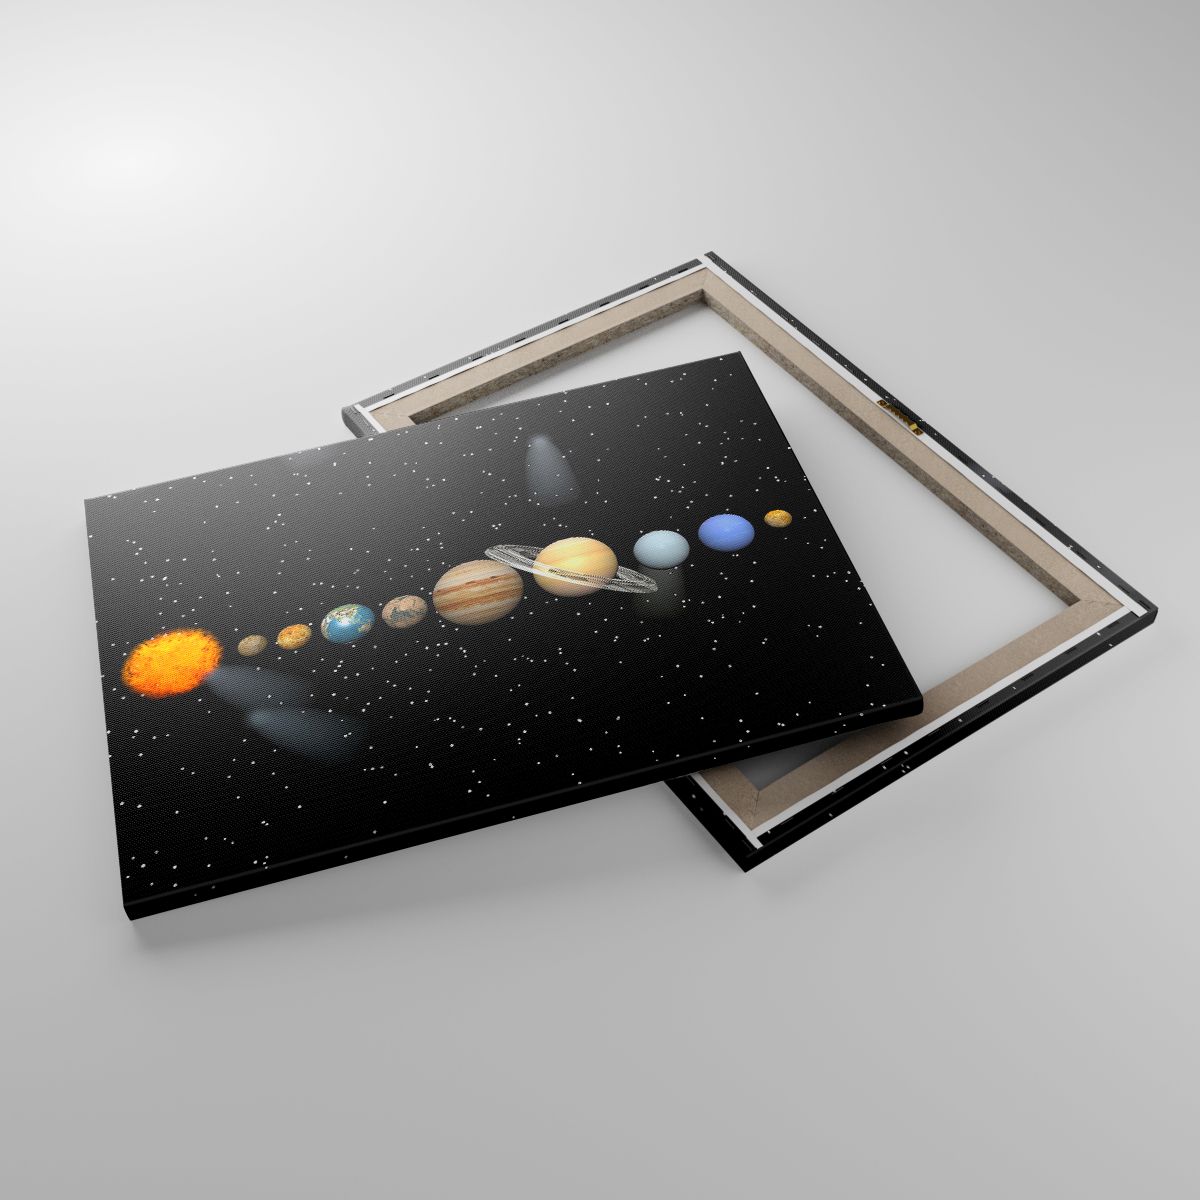 Quadri Spazio E Astronomia, Quadri Sistema Solare, Quadri Pianeti, Quadri Le Stelle, Quadri Cometa